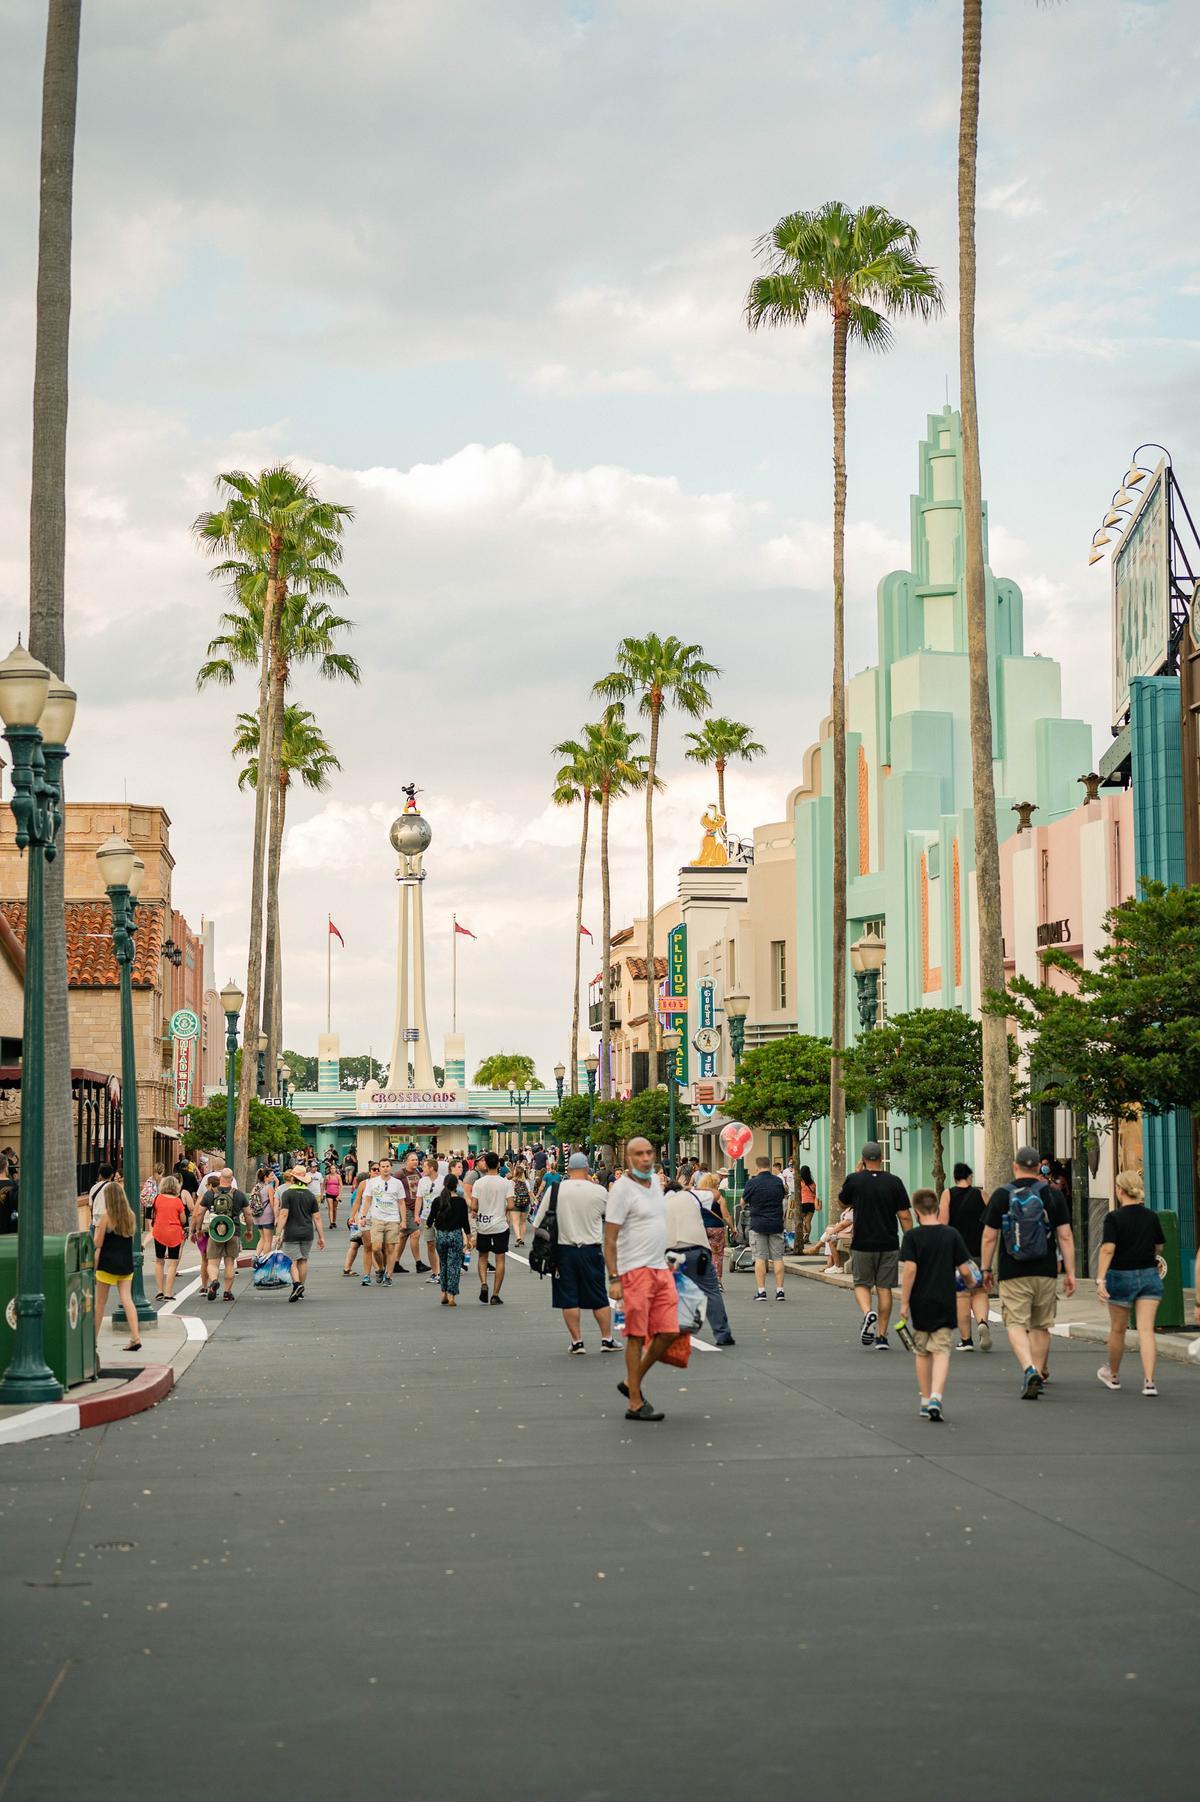 Los parques Disney simulan calles reales y escenarios de las películas